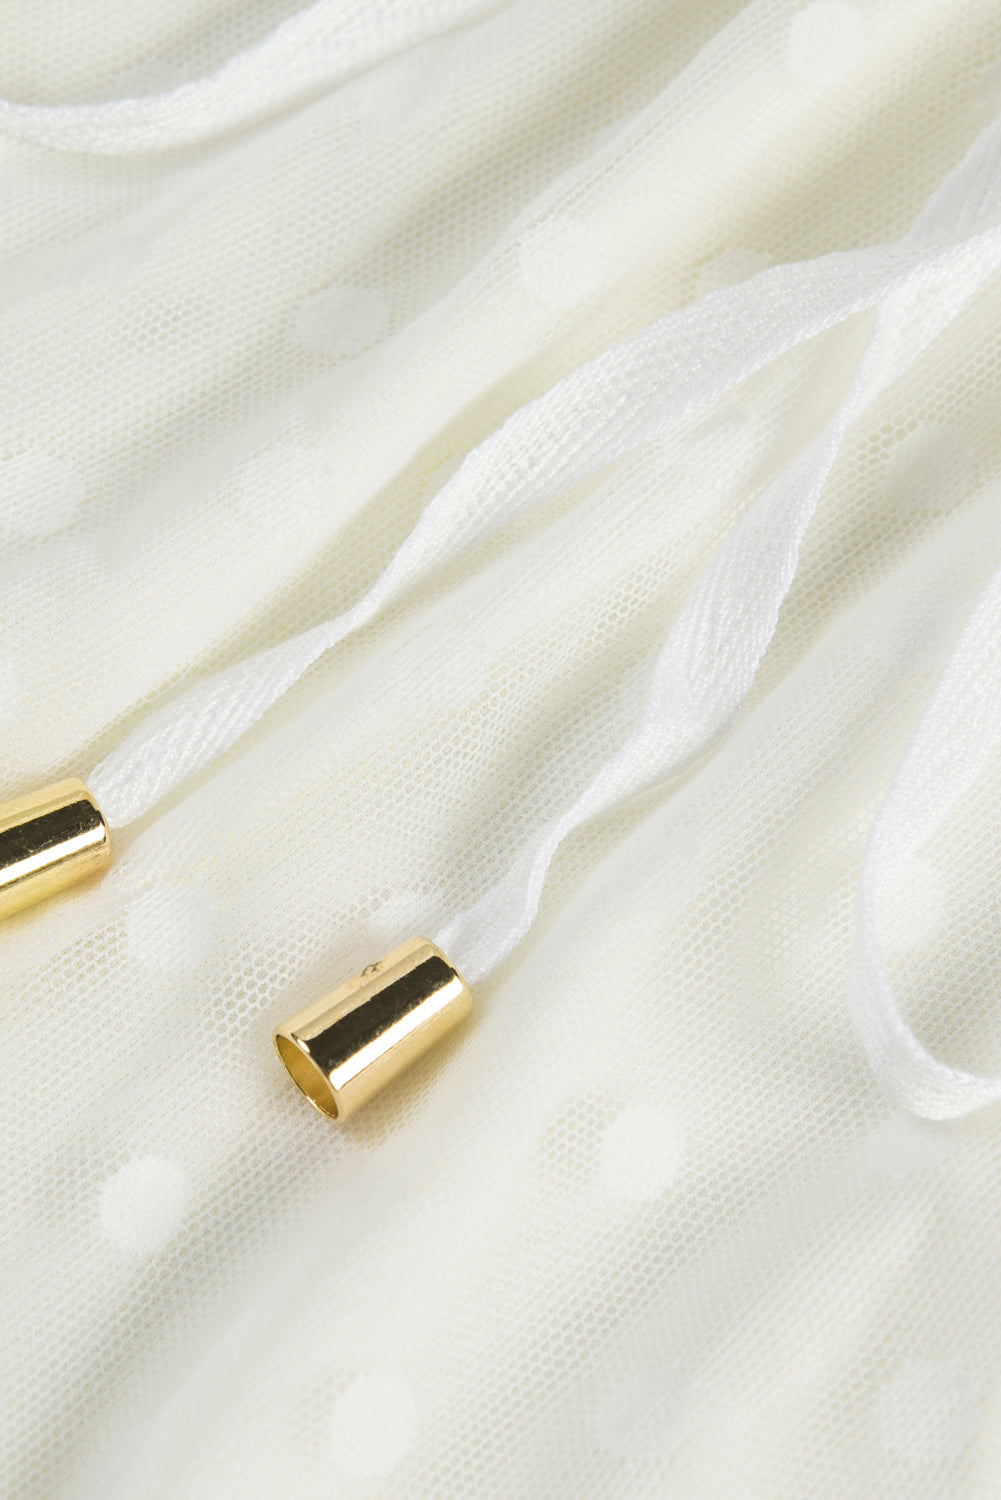 White Wrap V Neck Elastic Waist Polka Dot Mesh Lace Splicing Dress Mini Dresses JT's Designer Fashion